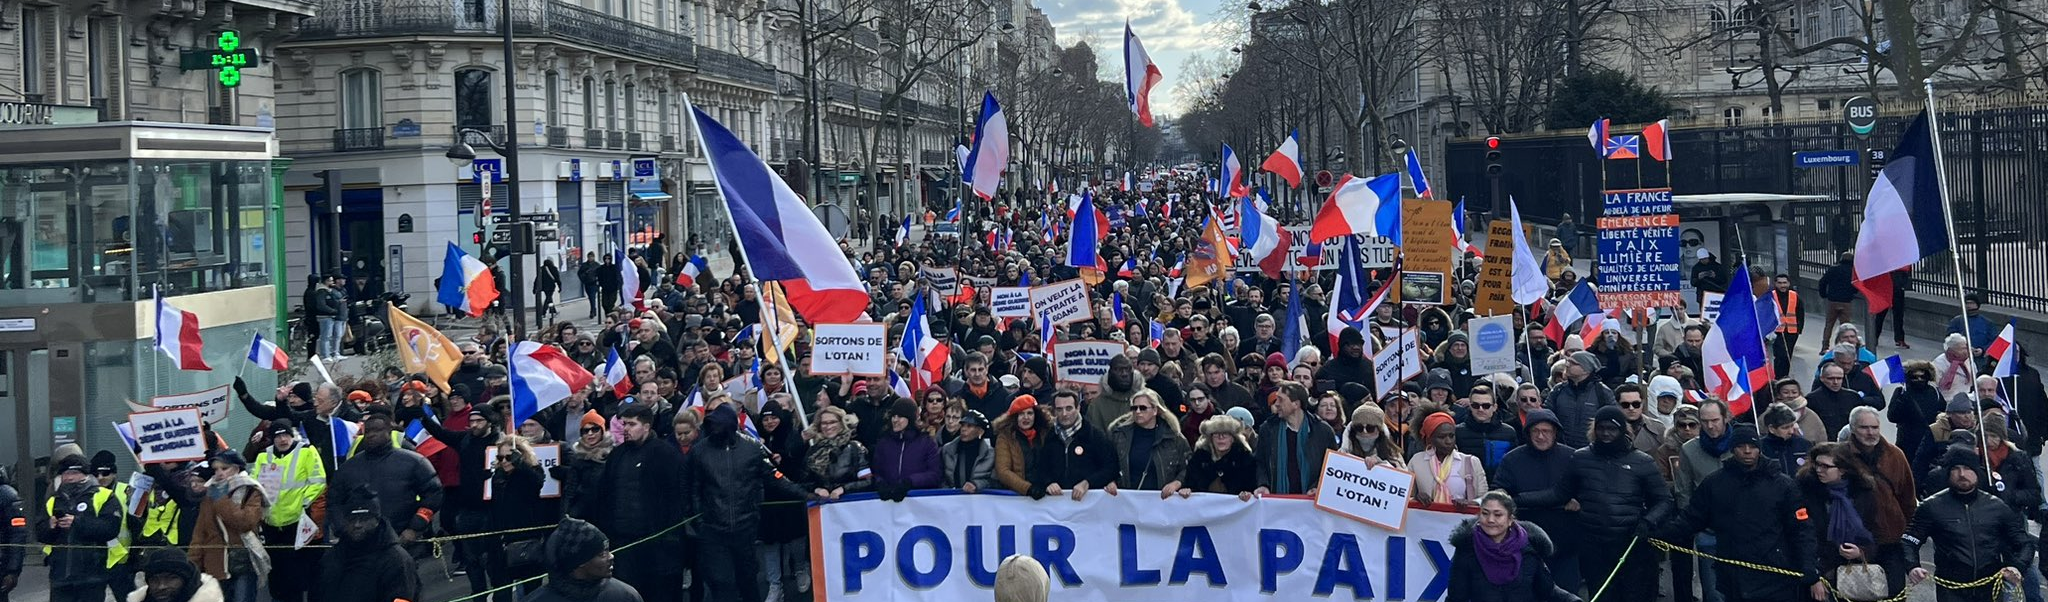 Grande mídia ignora protestos na França contra Otan e envio de armas à Ucrânia